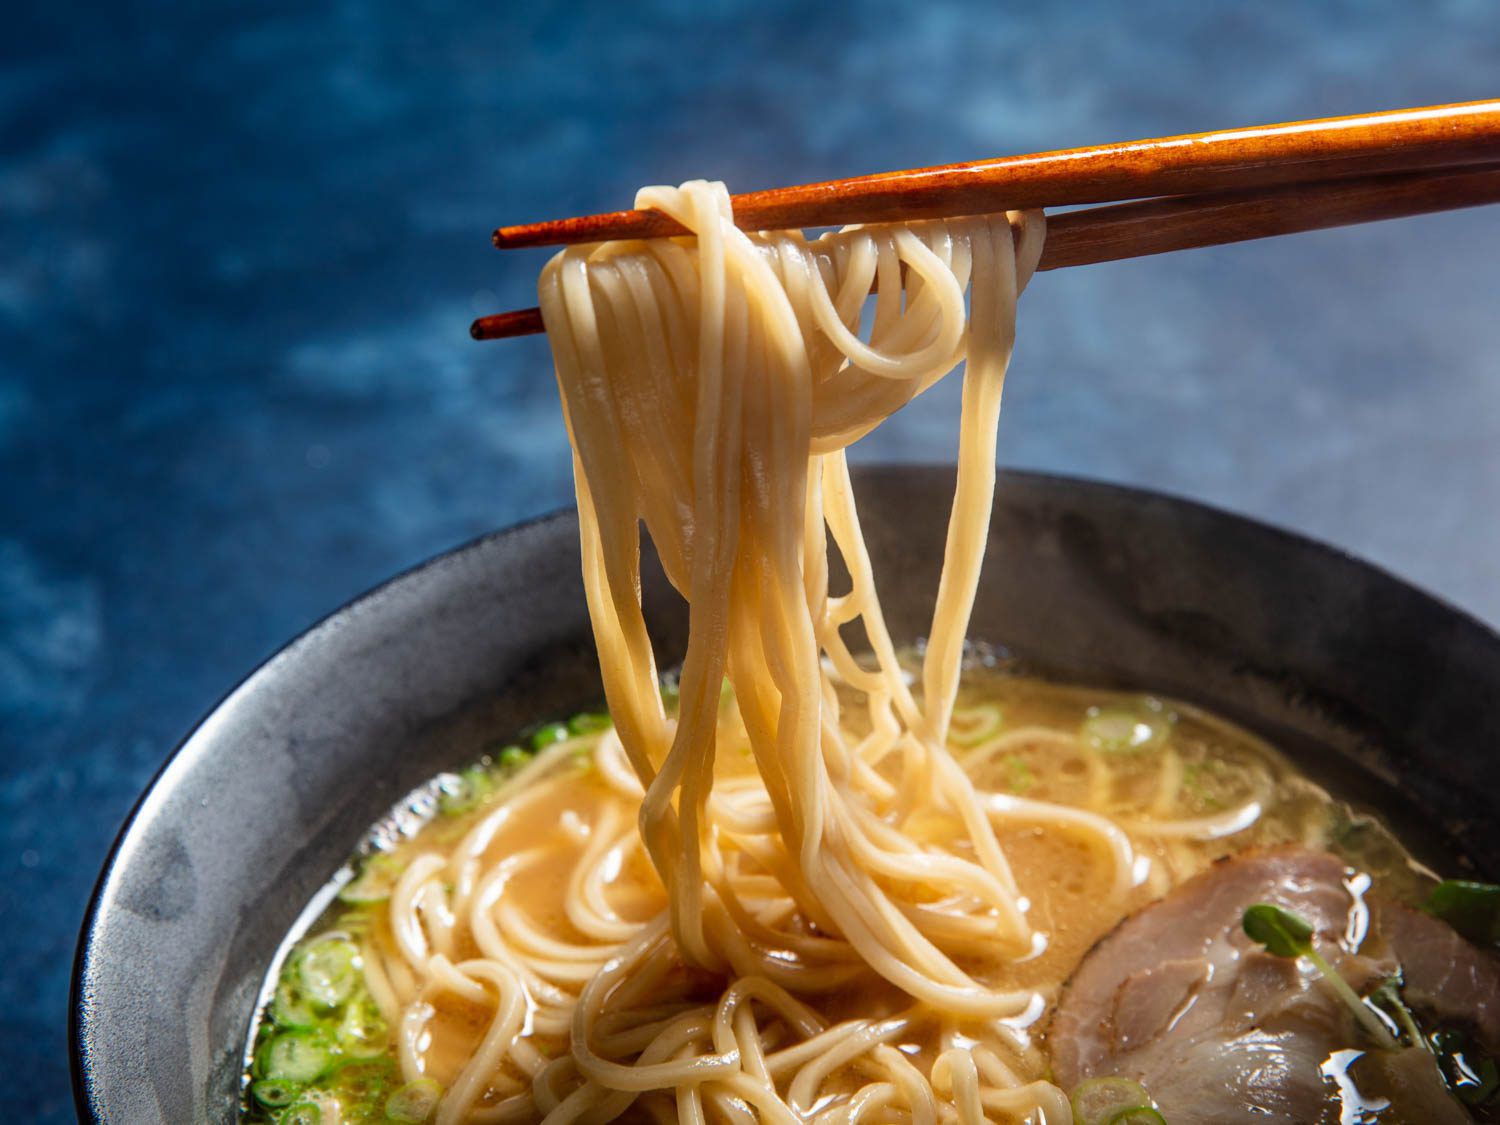 用筷子从一碗拉面中夹出自制的碱性面条